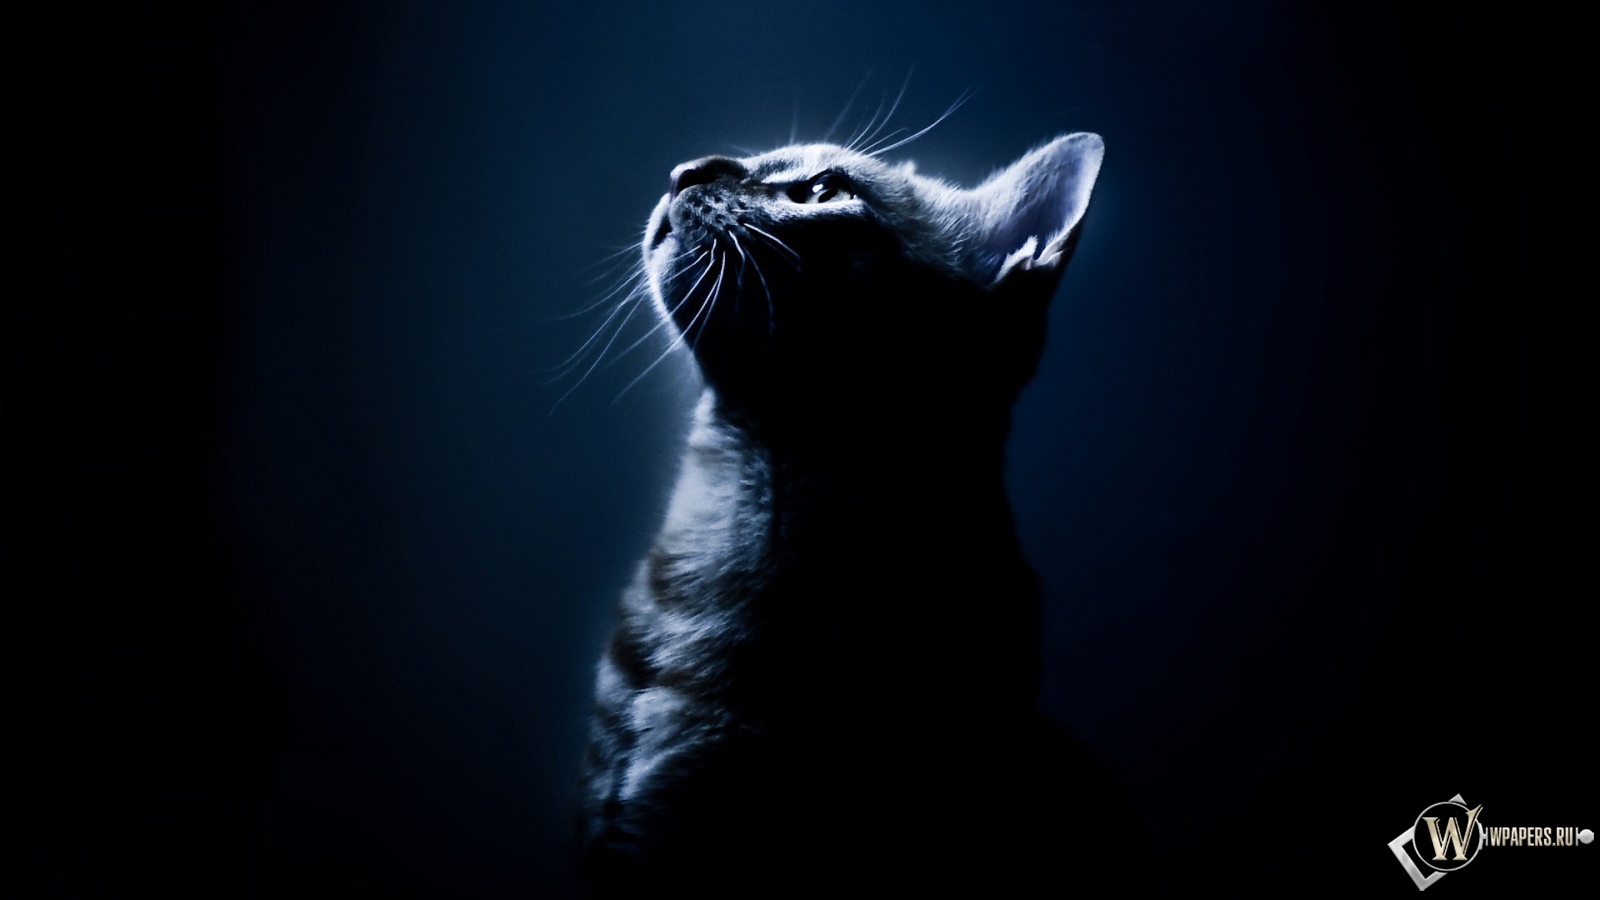 Котёнок в темноте 1600x900